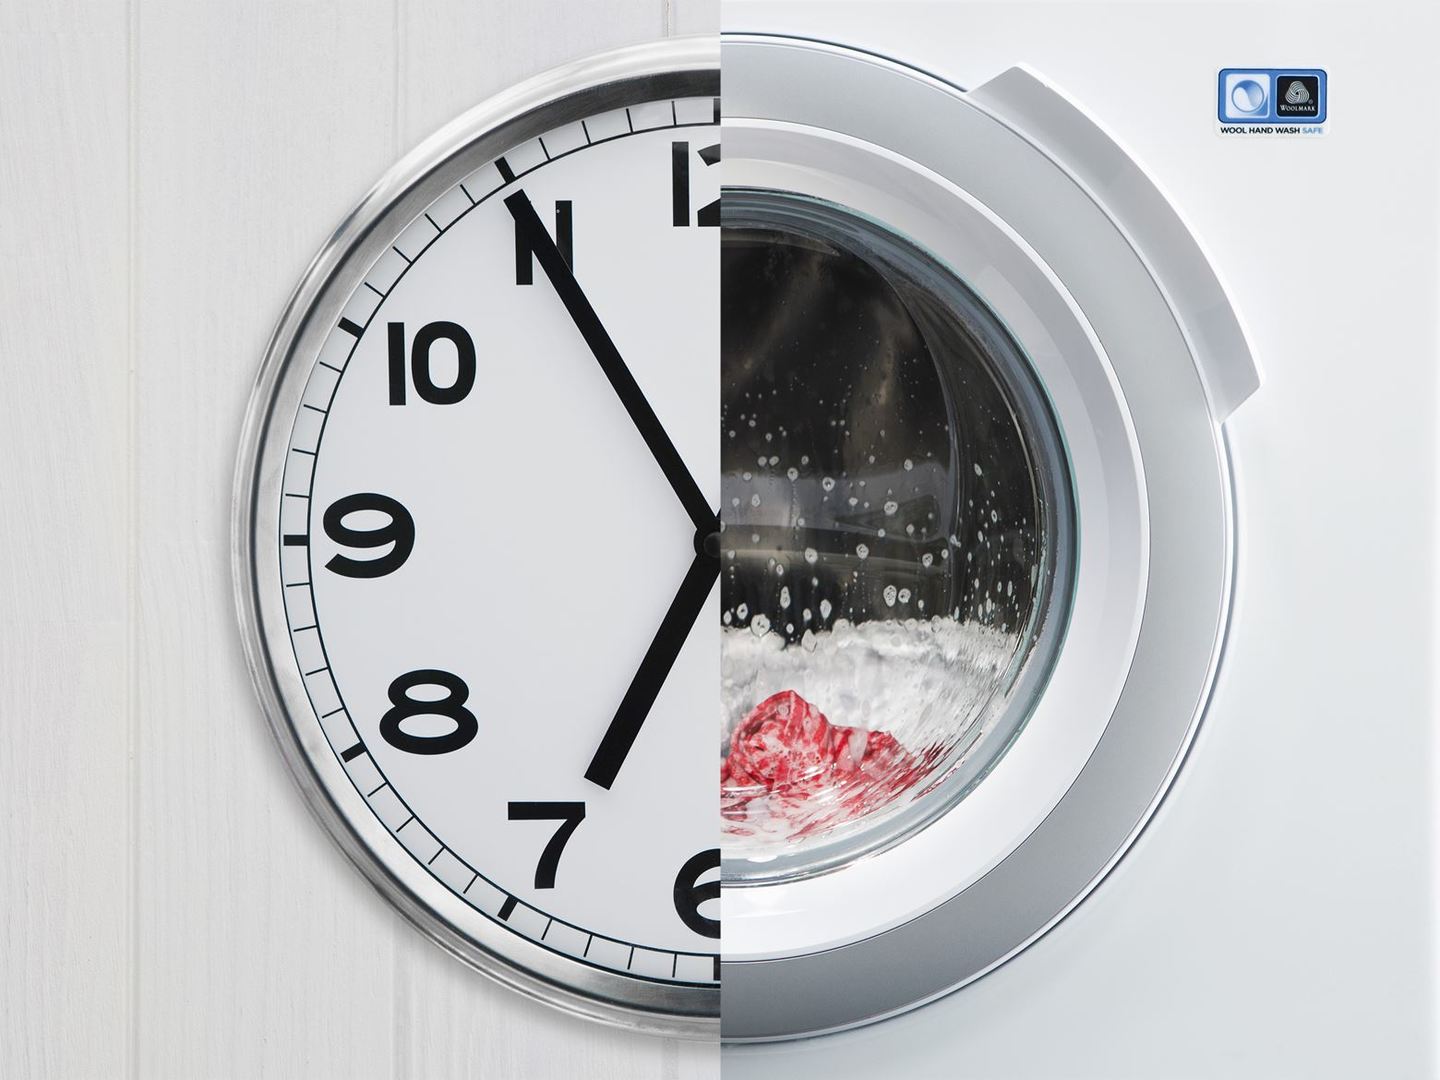 Выбираем стиральную машину: с сушкой или без неё? — Ferra.ru